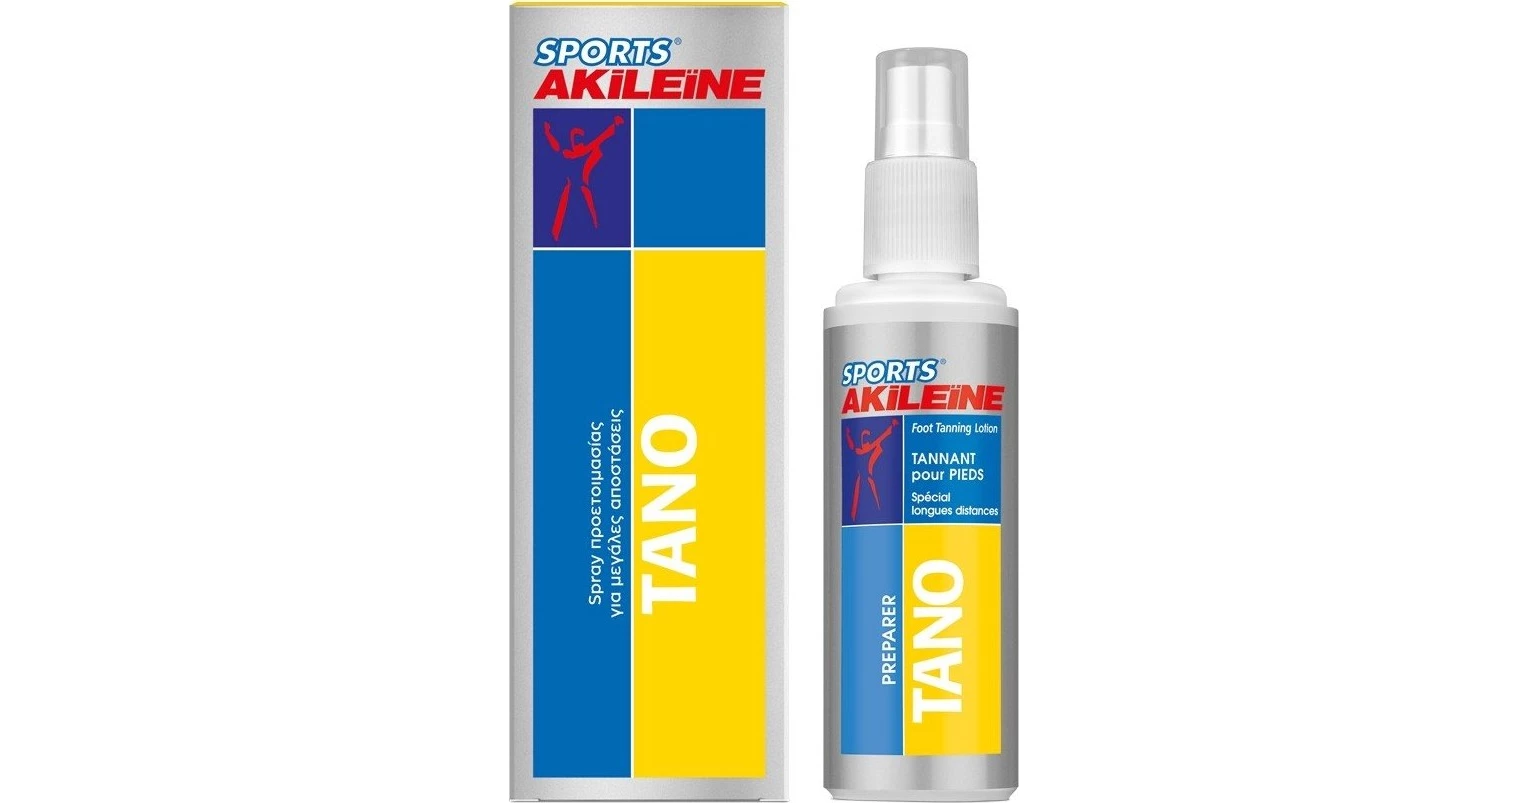 Care Plus Anti-Blister Spray – 50ml